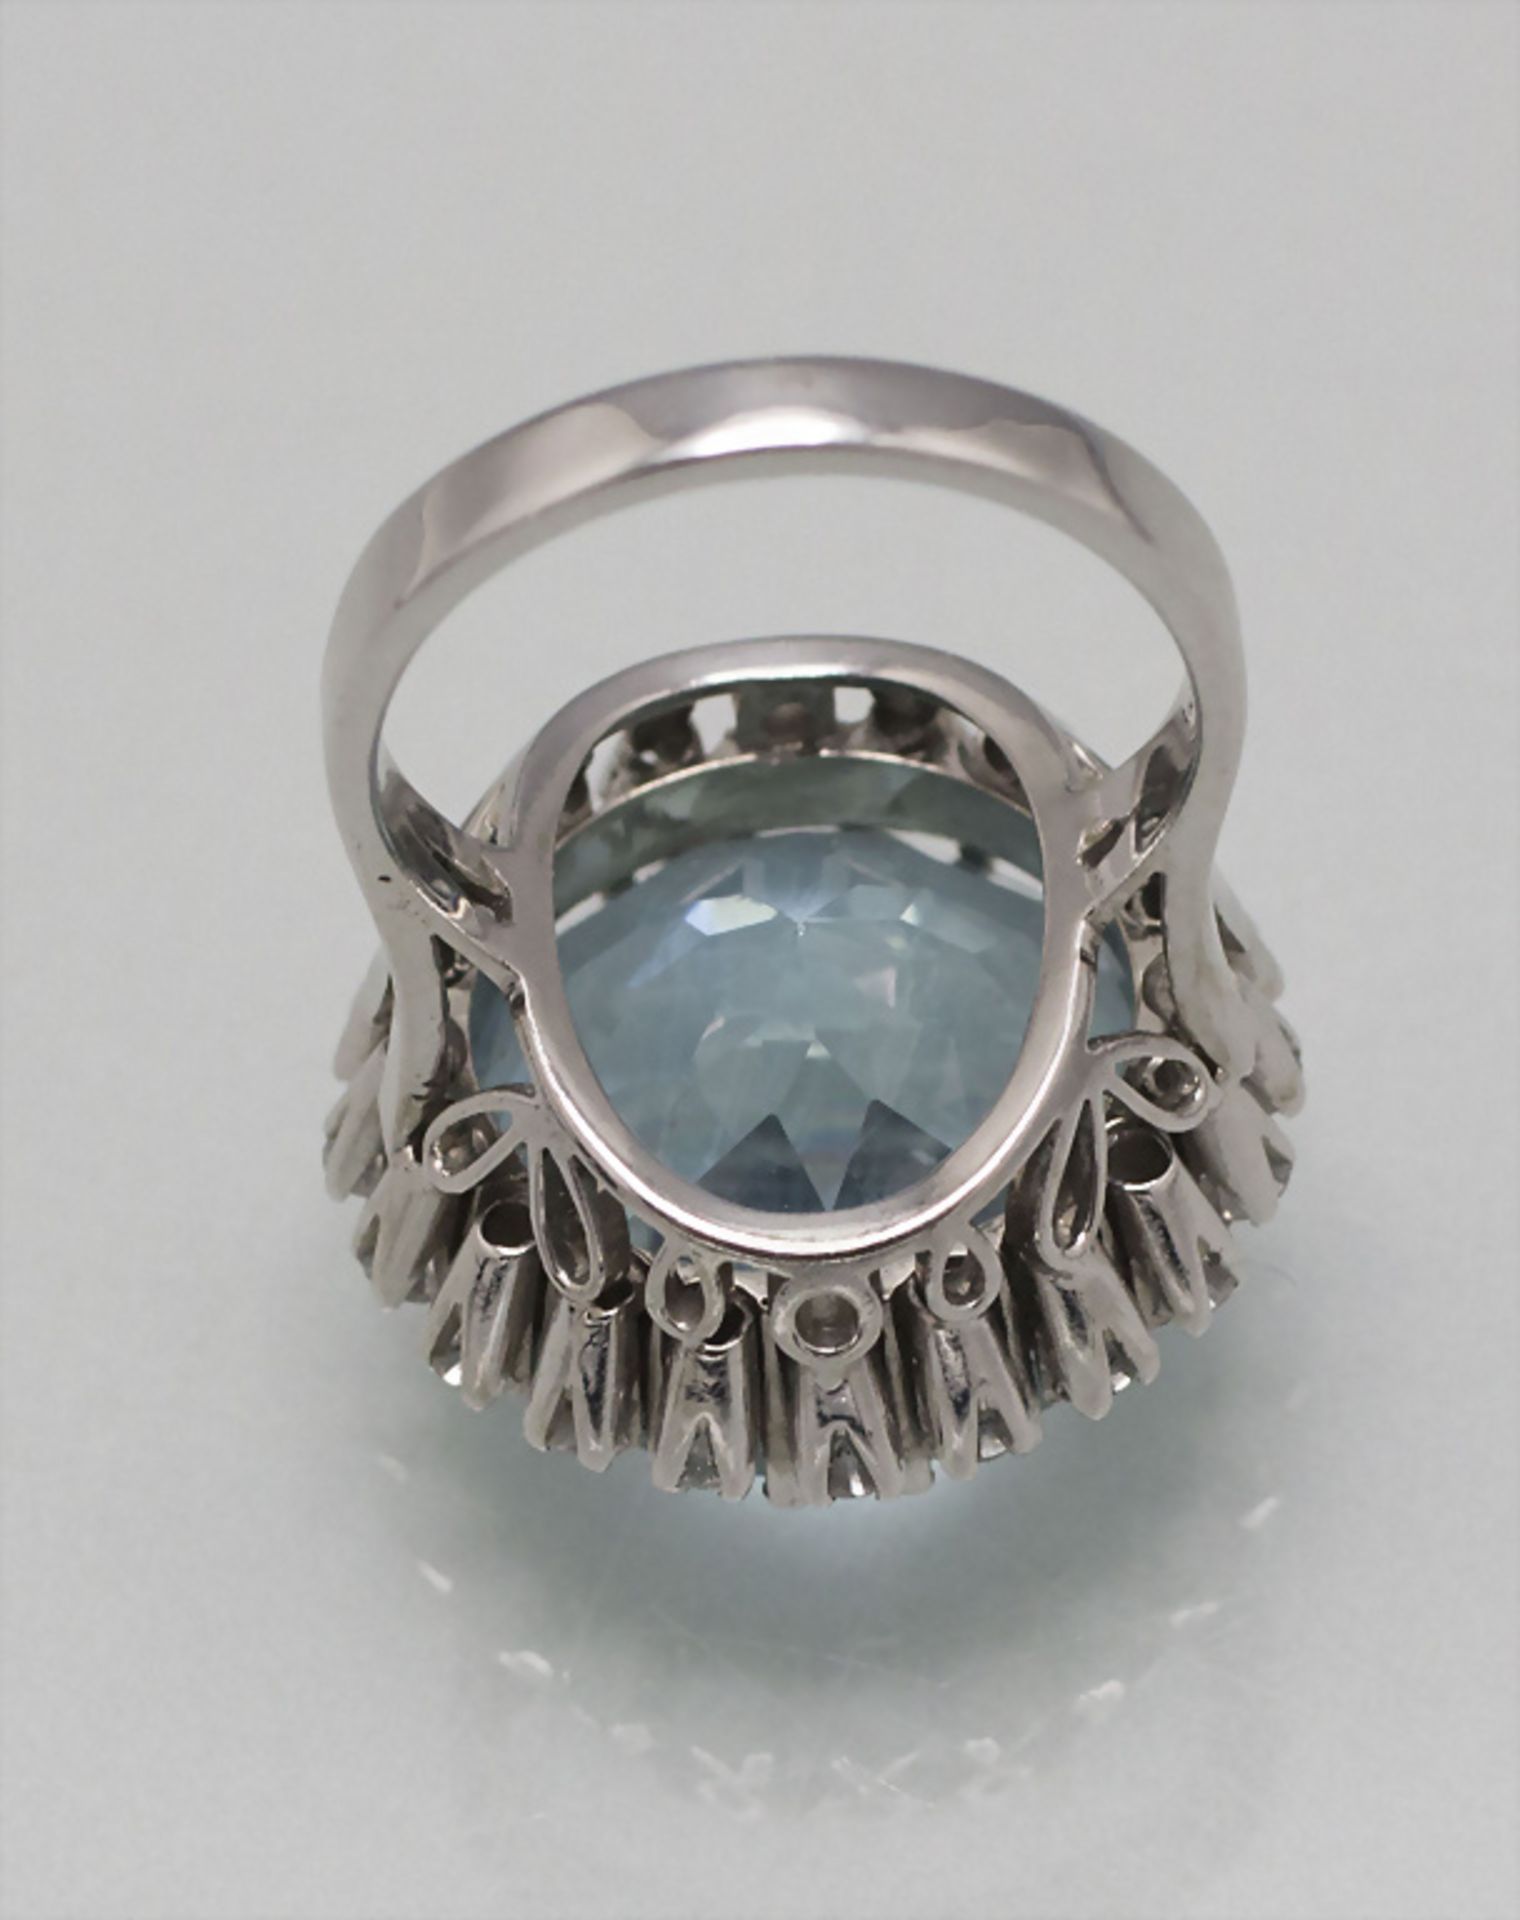 Damenring mit Aquamarin und Diamanten  / A ladies 18 ct gold ring with natural aquamarine and ... - Bild 3 aus 4